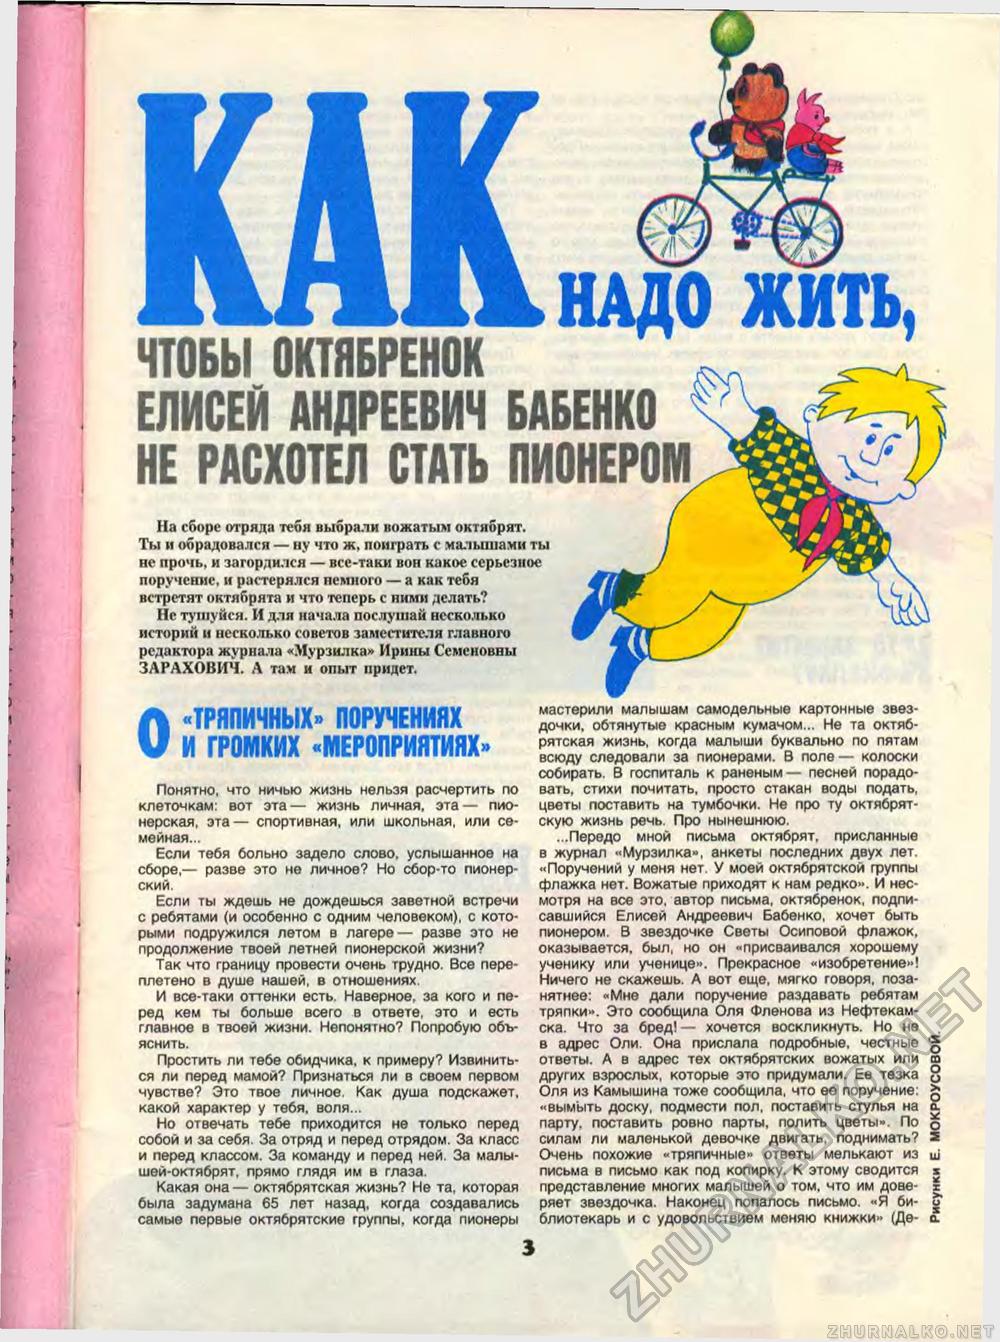  1989-05,  5